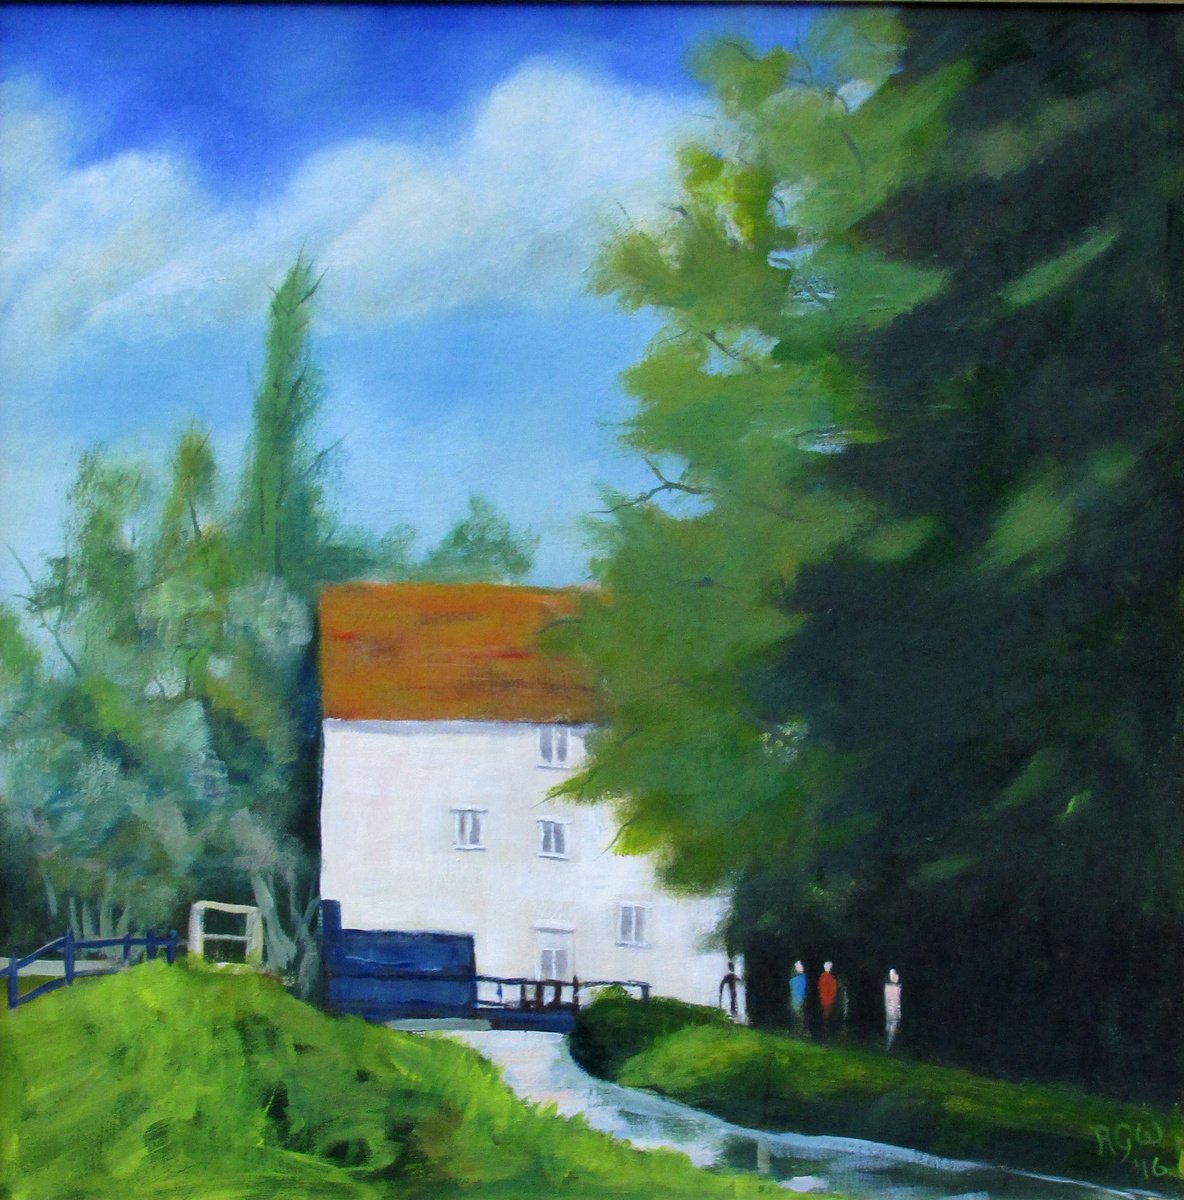 The Flour Mill 2 by Robert Wells